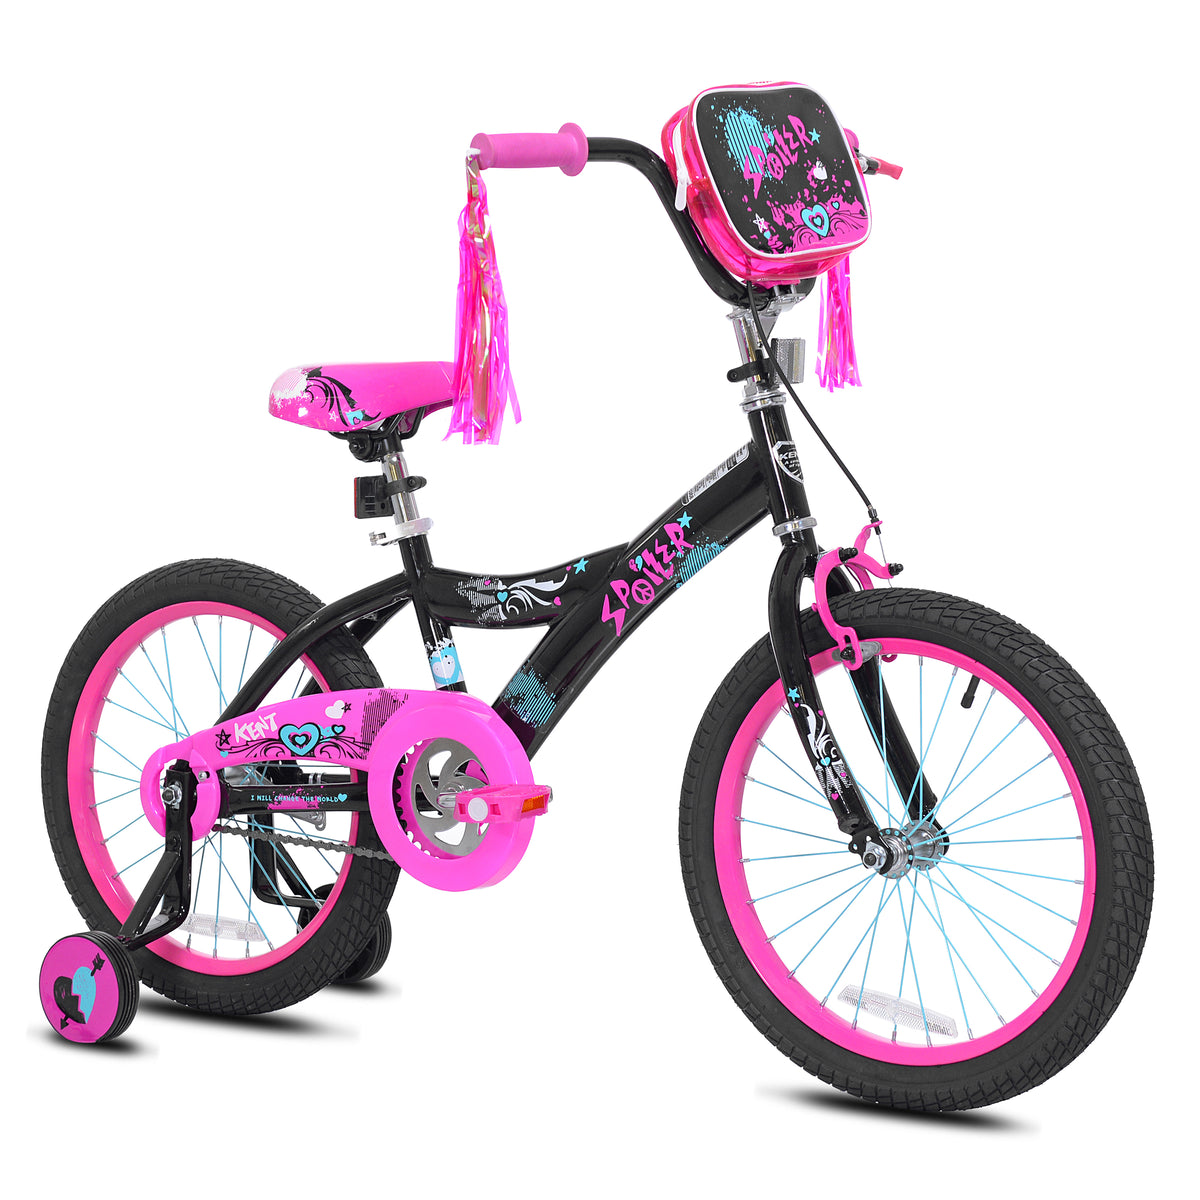 18" Kent Spoiler | Cruiser Bike for Kids Ages 5-8